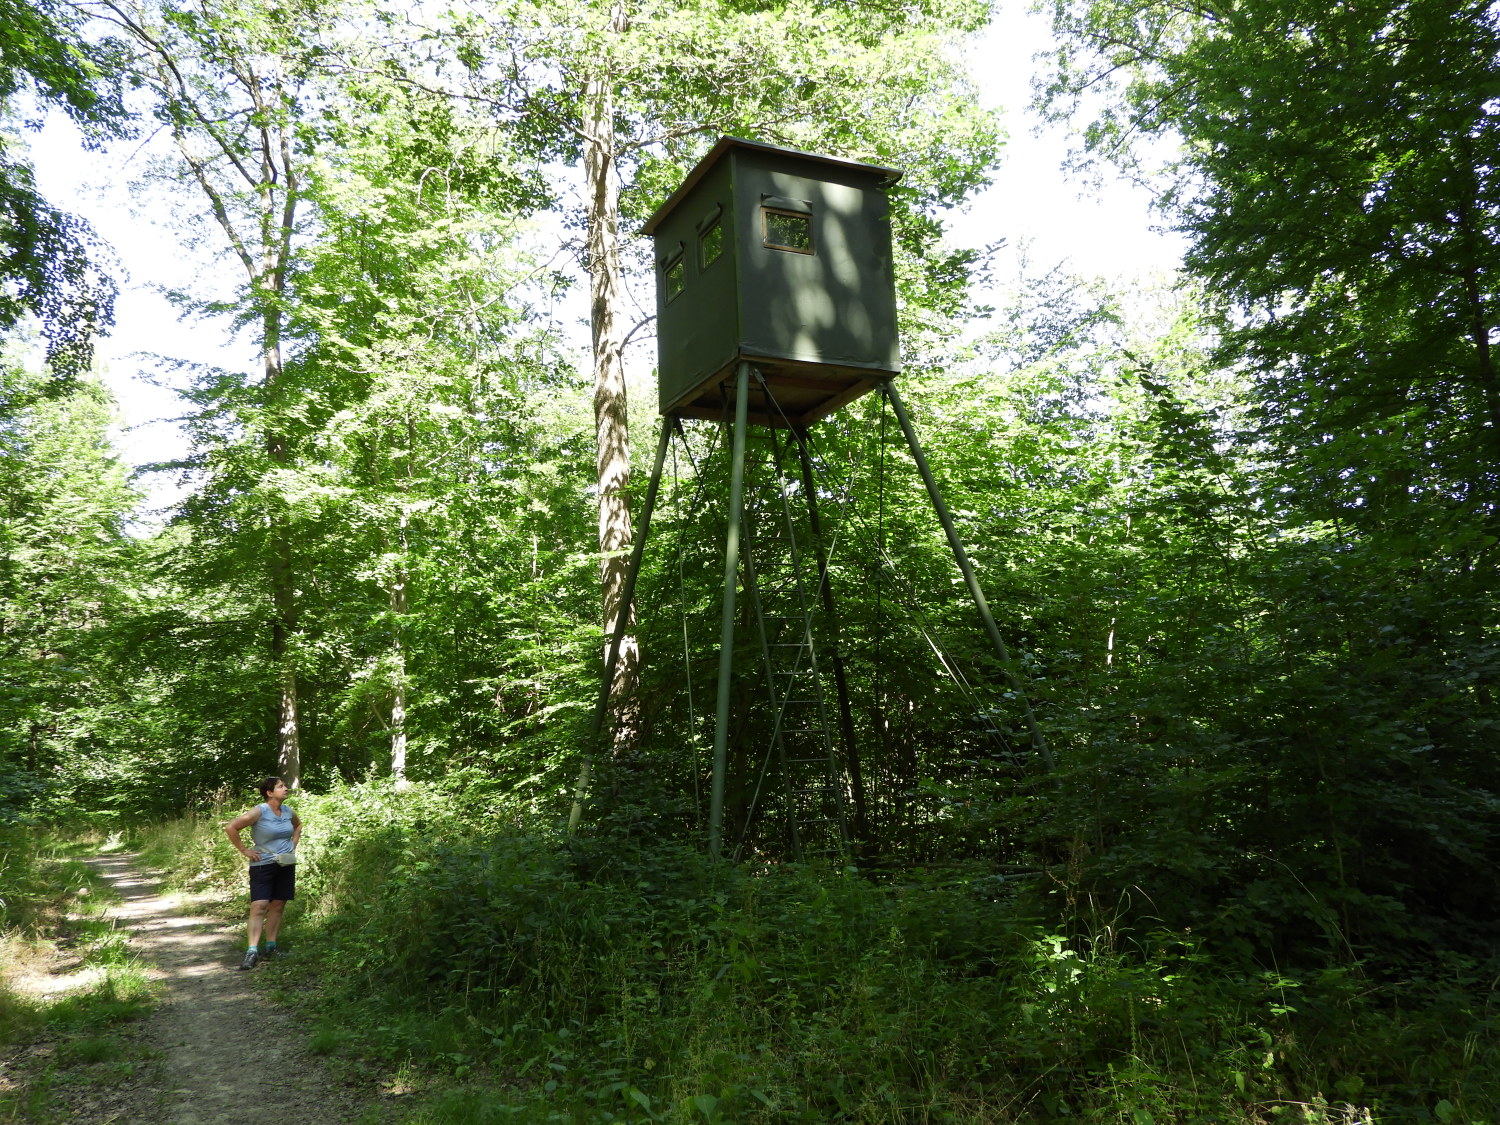 Hunter's observation hut at Halbtritz